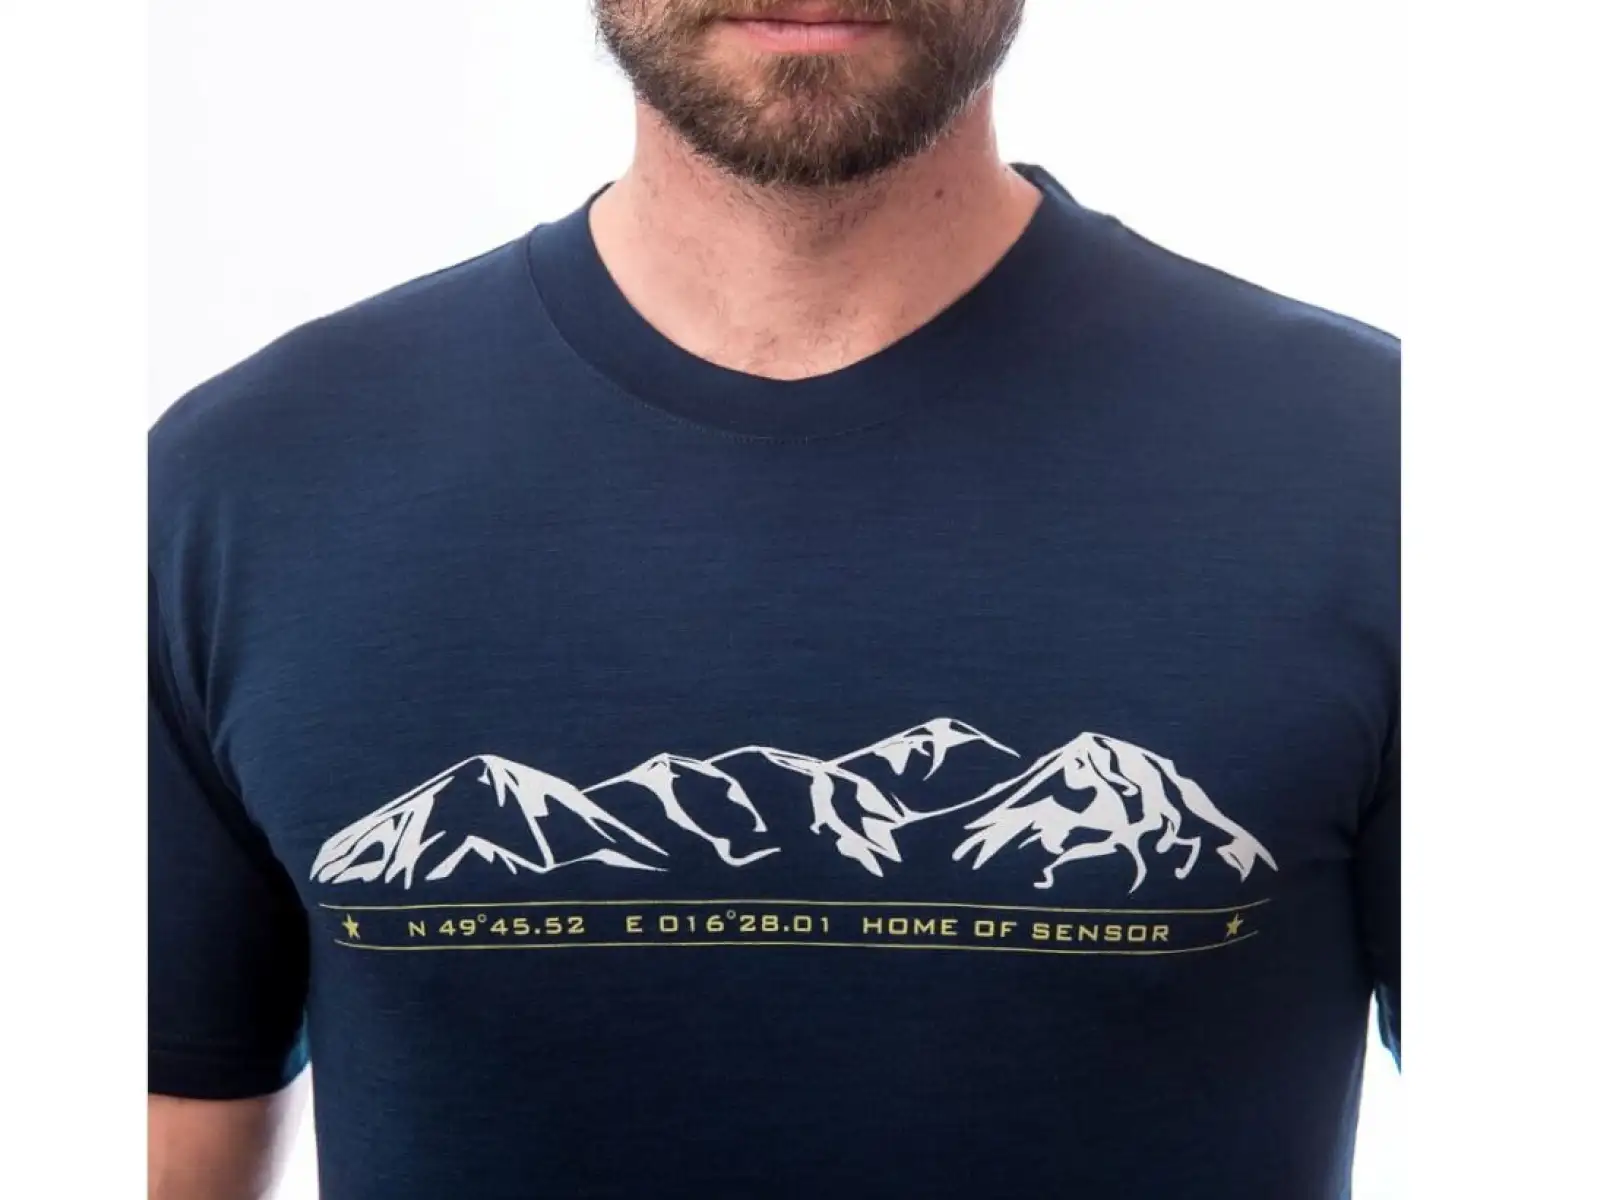 Sensor Merino Active PT Mountains pánske tričko s krátkym rukávom Deep blue